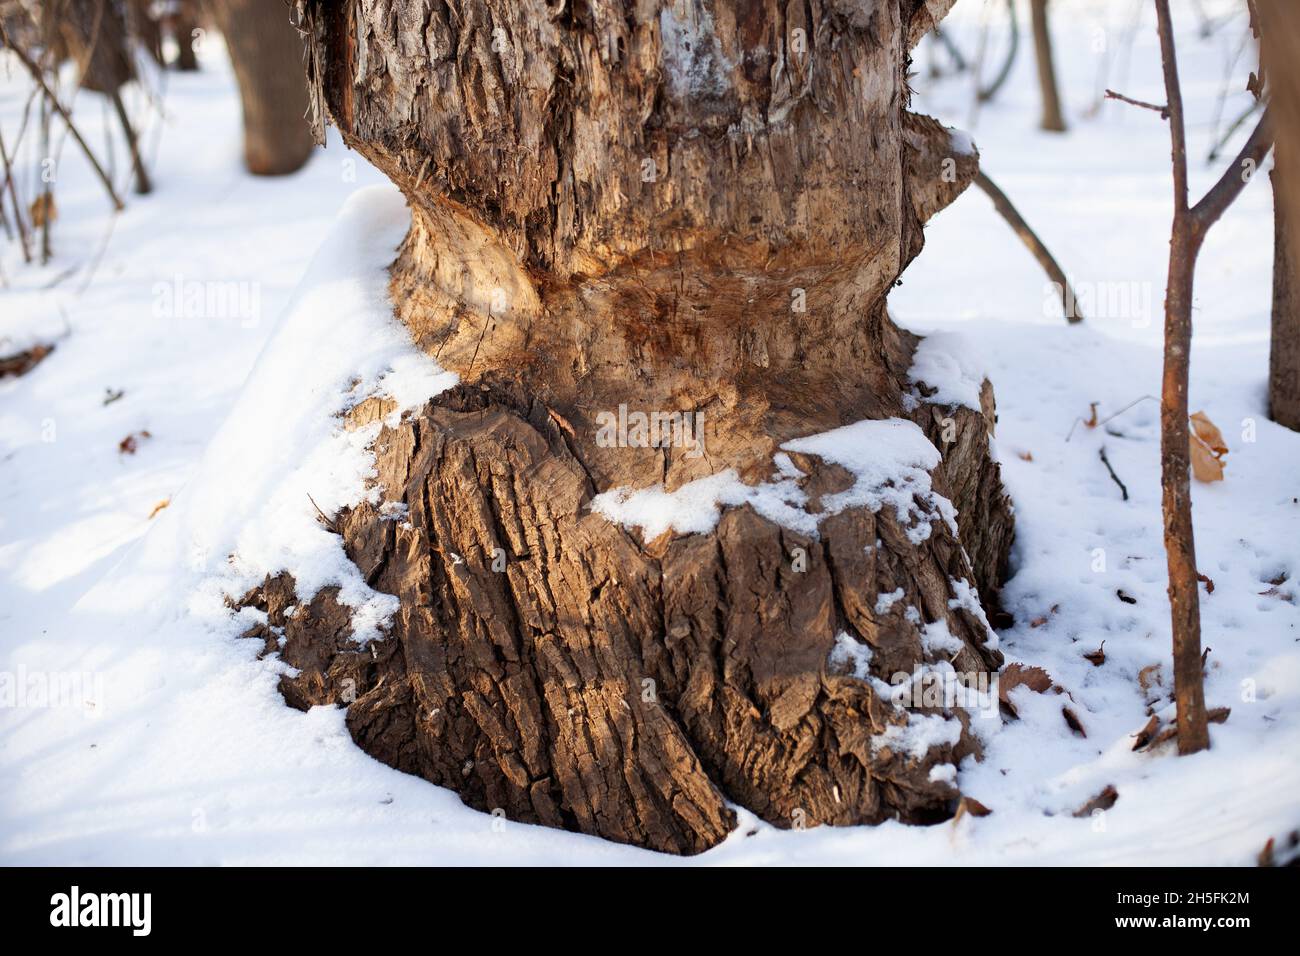 Le vieux arbre pousse dans la forêt d'hiver.Gros plan du tronc d'arbre avec des marques des dents du castor et recouvert de neige, paysage hivernal Banque D'Images